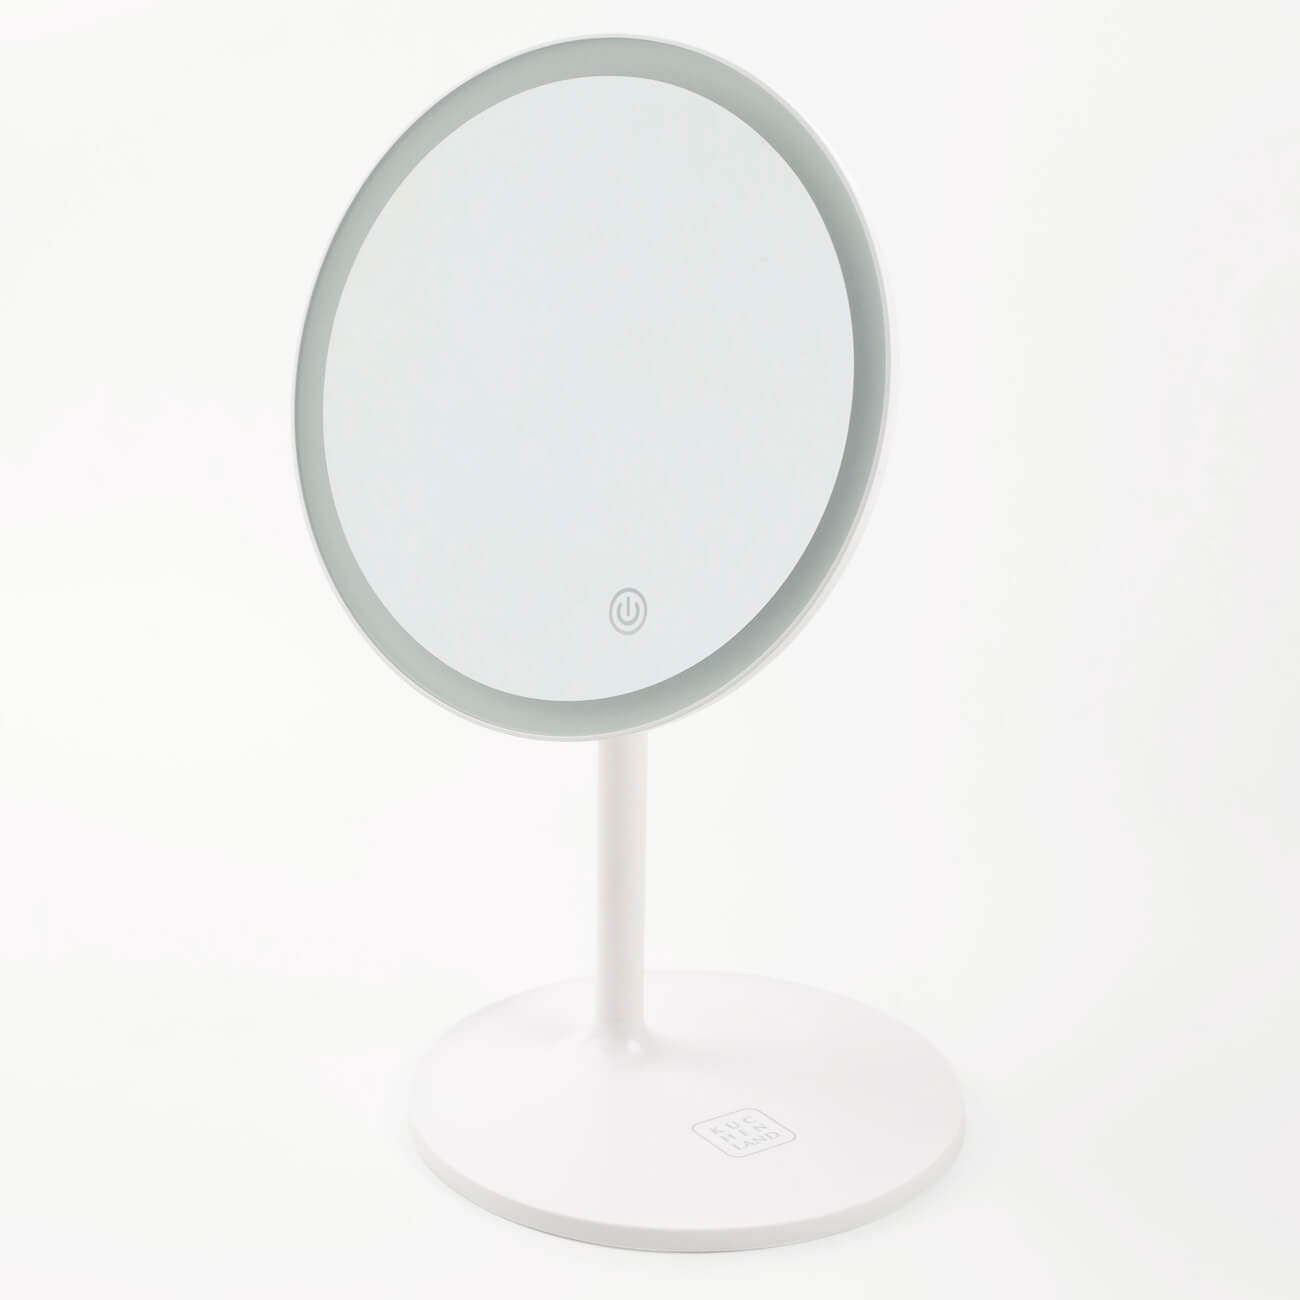 Зеркало настольное, 33 см, с подсветкой, на подставке, пластик, круглое, белое, Vesta настольное косметическое зеркало savol